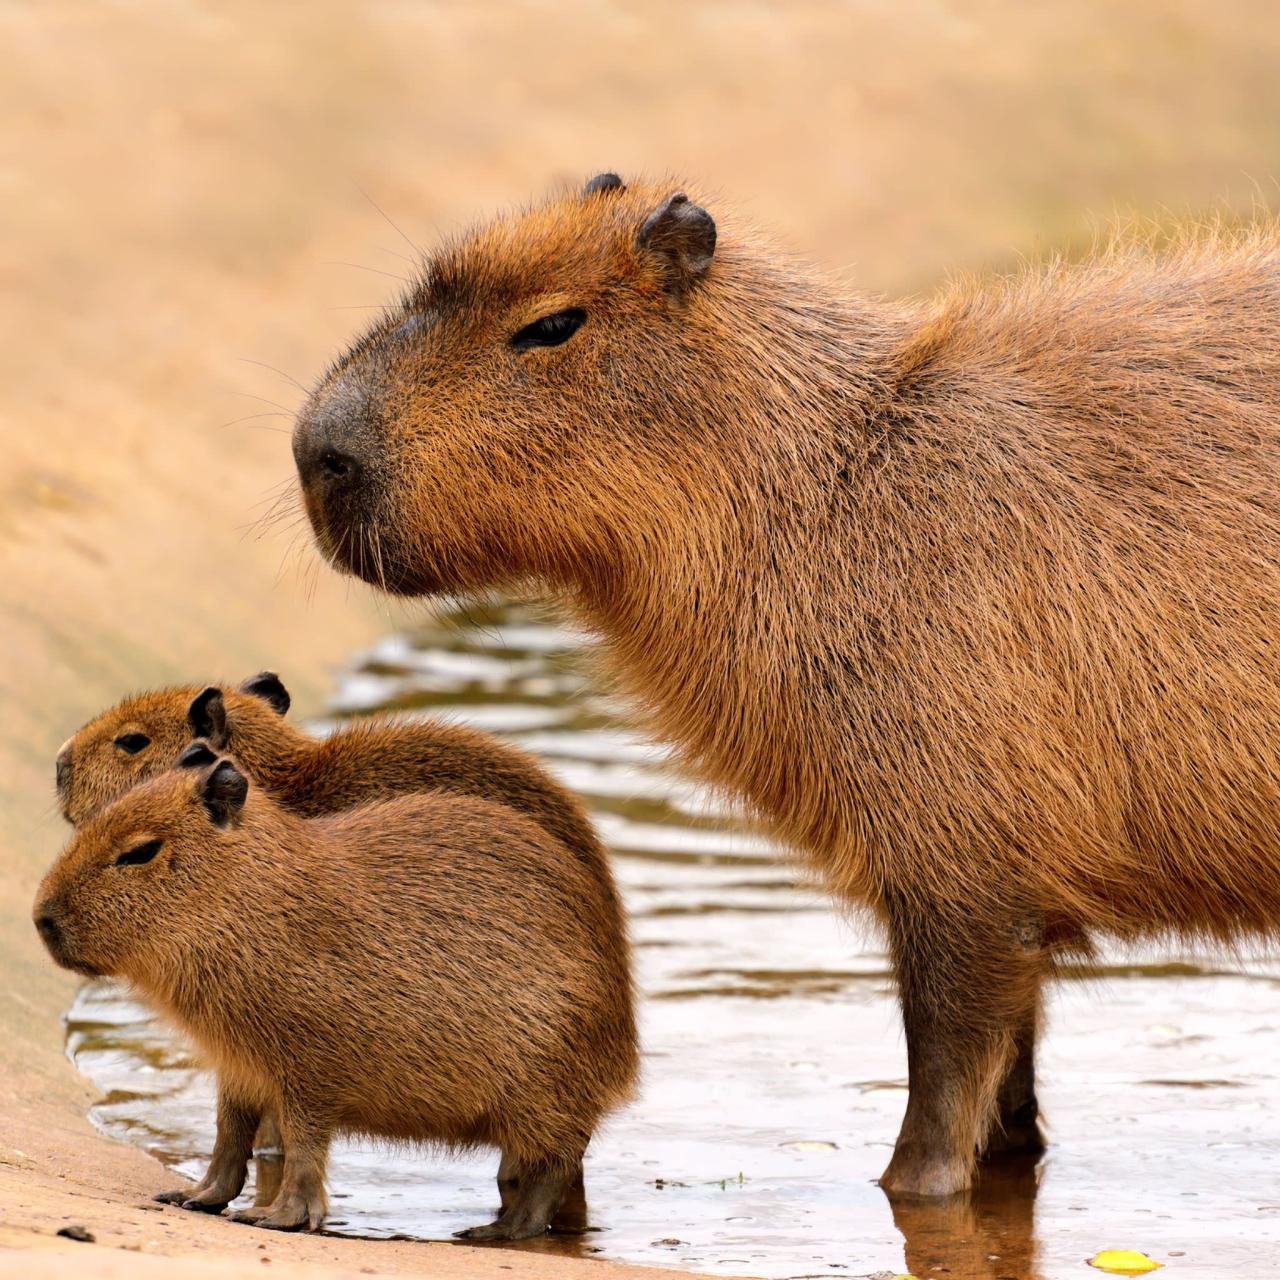 Kapibara
